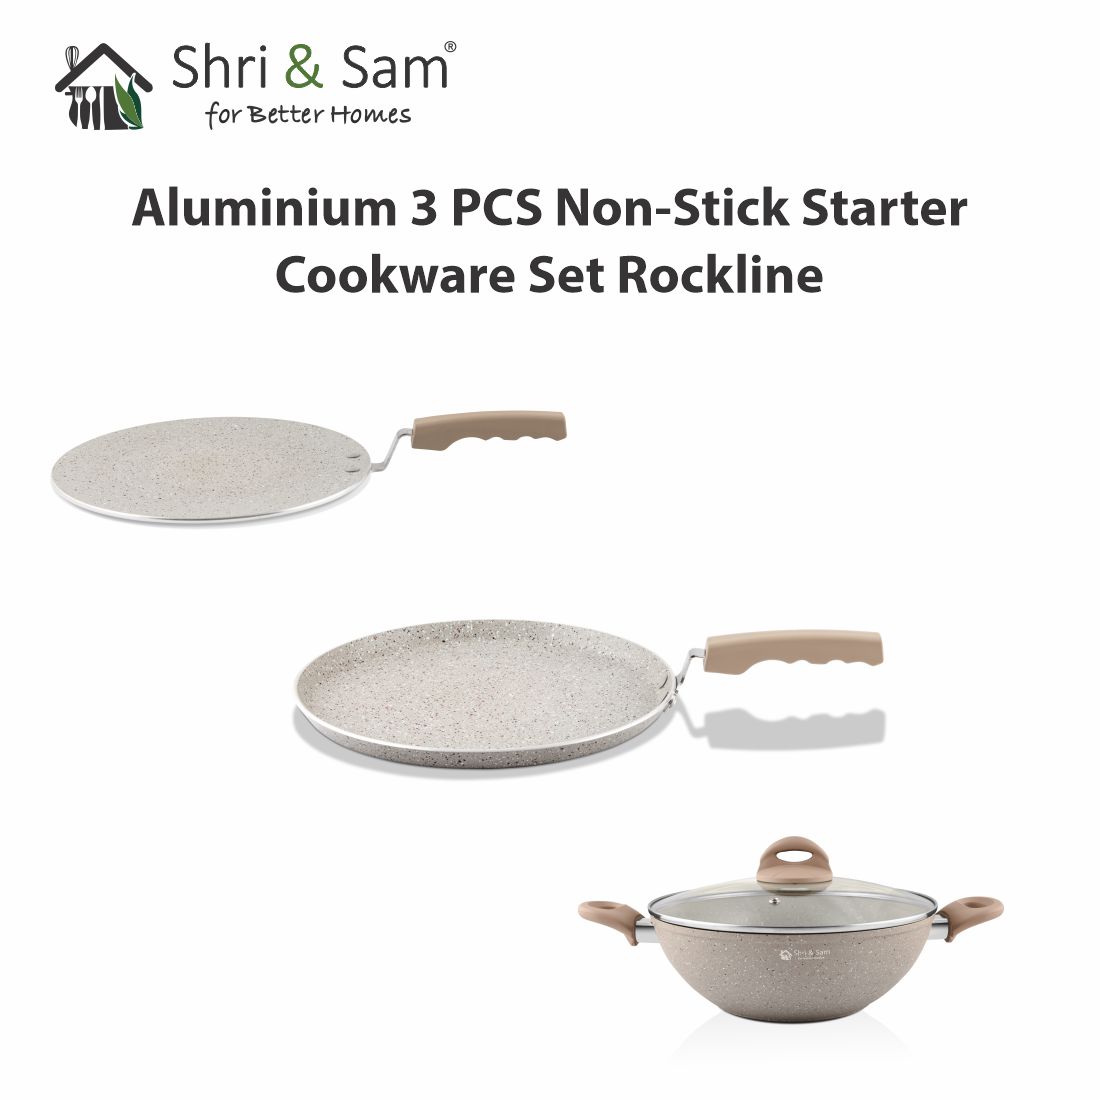 Aluminium 3 PCS Non-Stick STARTER Cookware Set Rockline